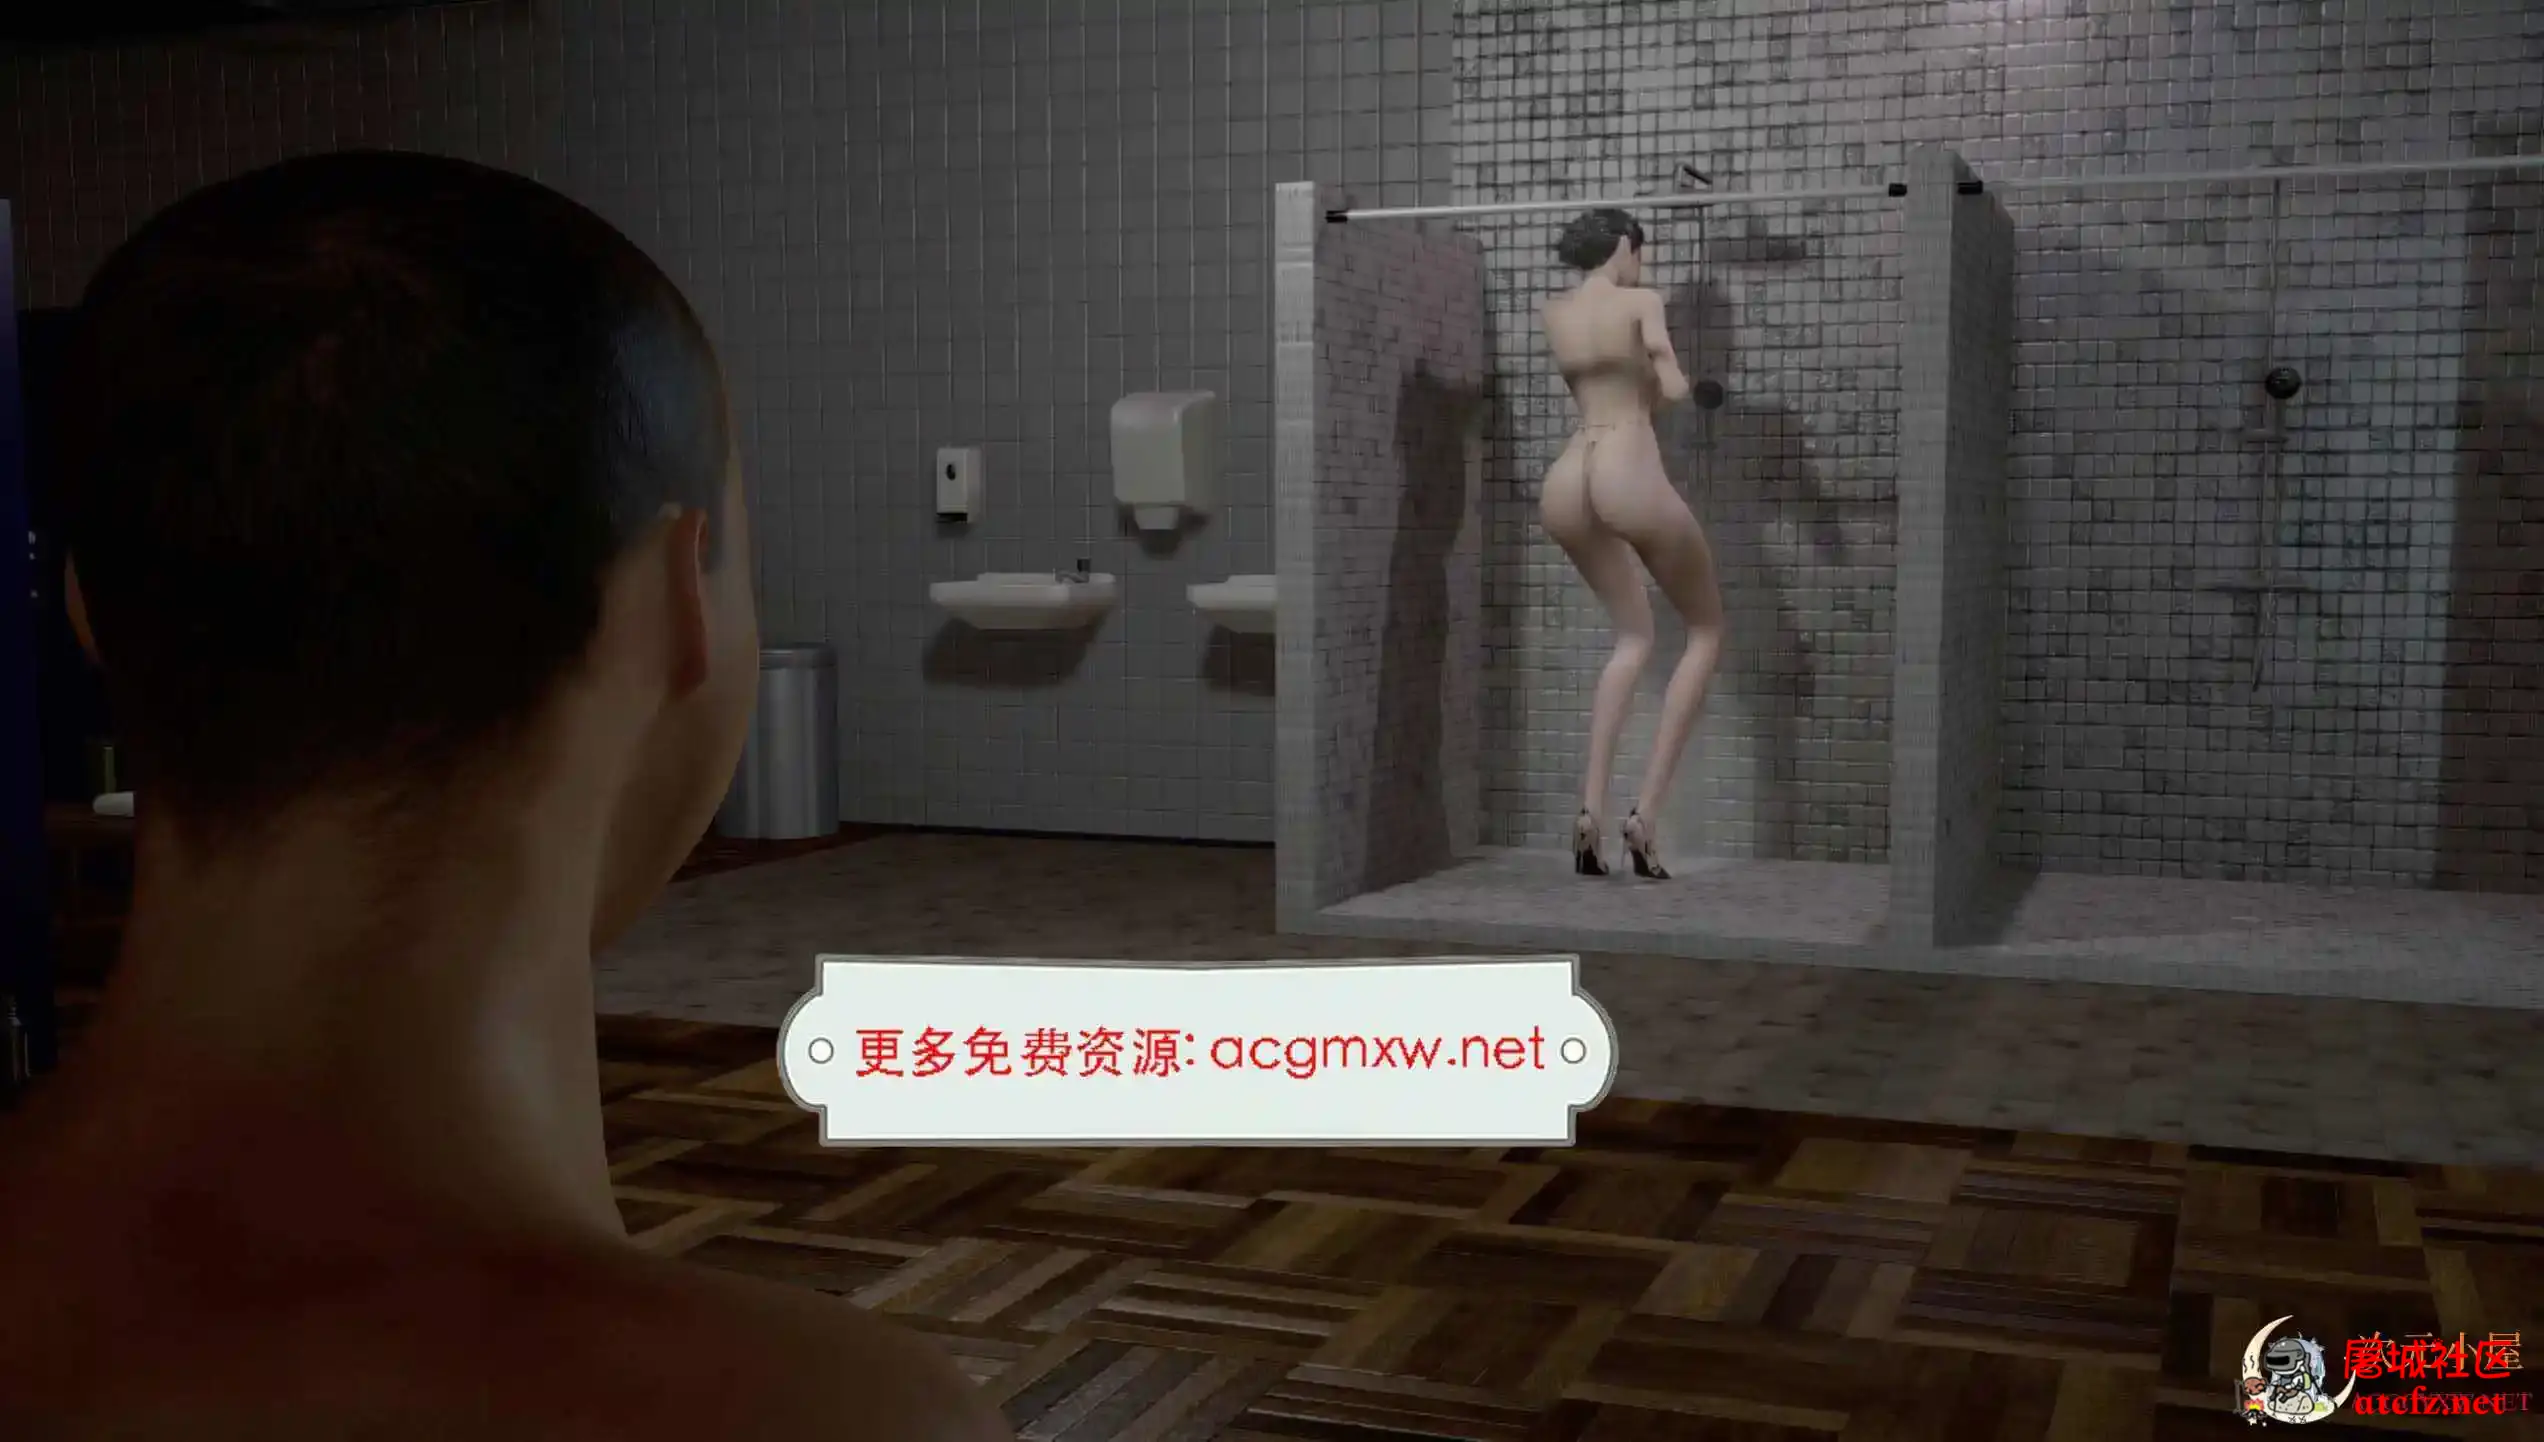 [社保3D/全动态][VAM]极品长腿御姐在浴室被小屁孩玩母狗游戏[中文剧情/3.3G] 屠城辅助网www.tcfz1.com673